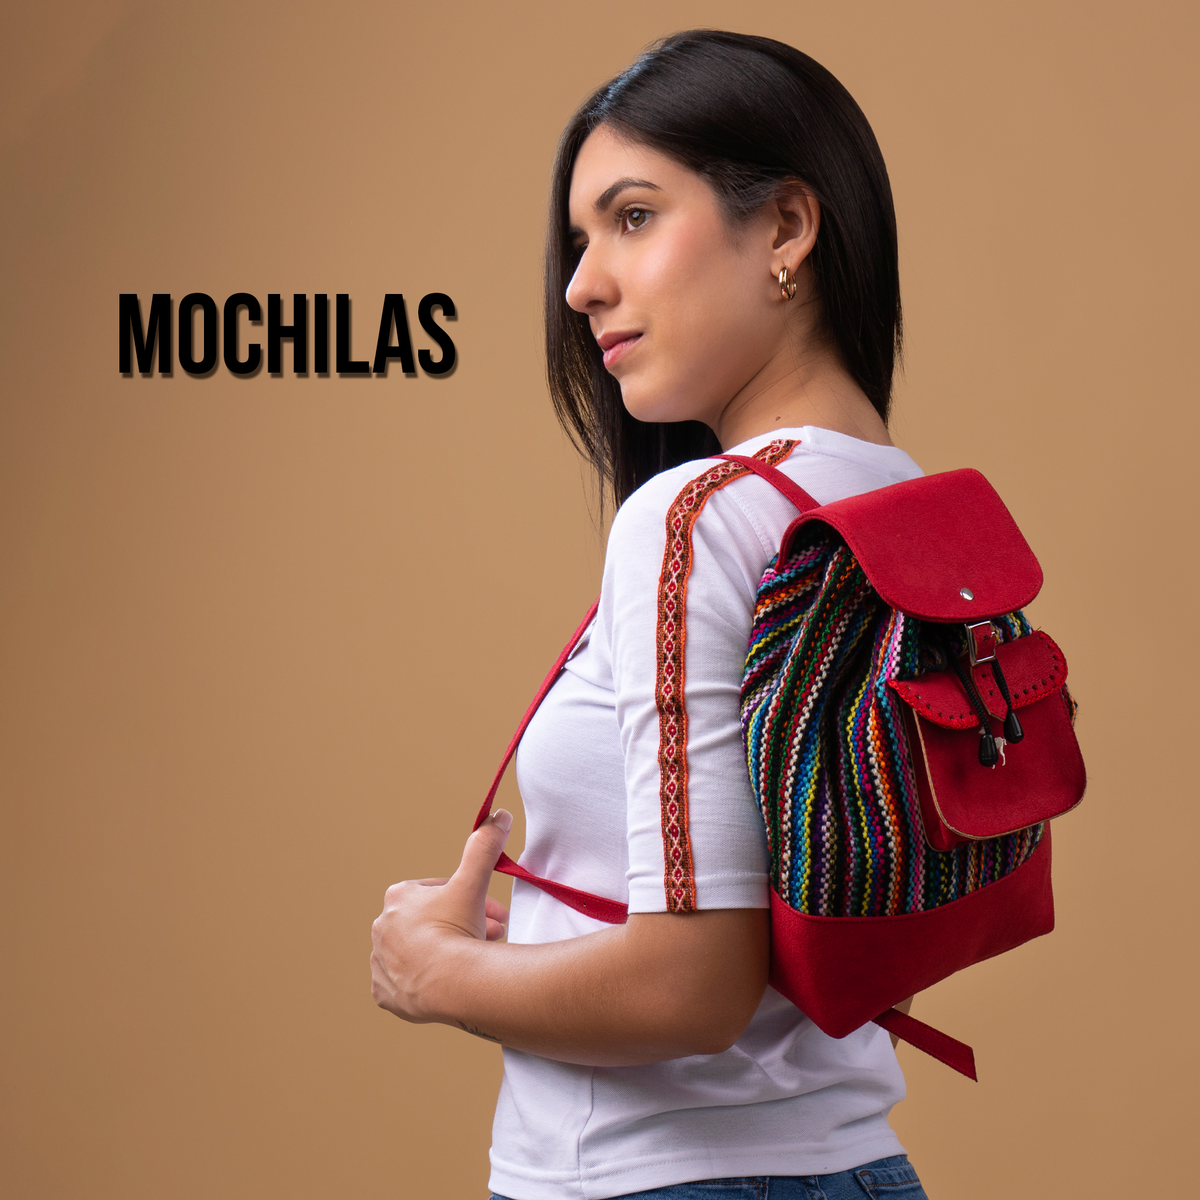 Mochila Peru, Accesories, Catálogo de productos